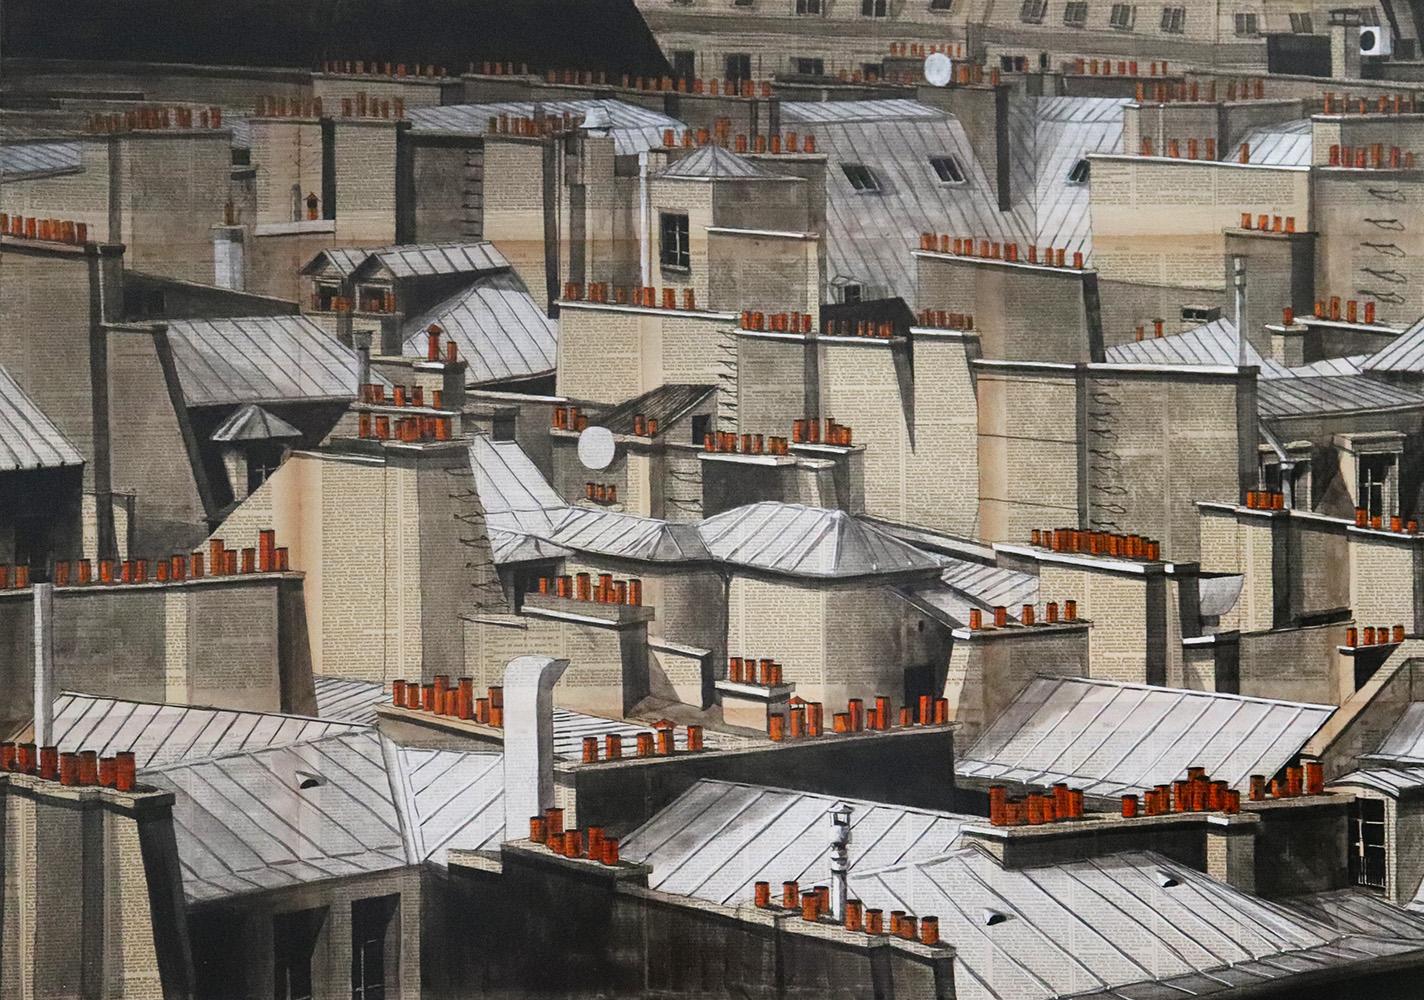 Paris Rooftops II by Guillaume Chansarel - Urban landscape painting, Paris, city